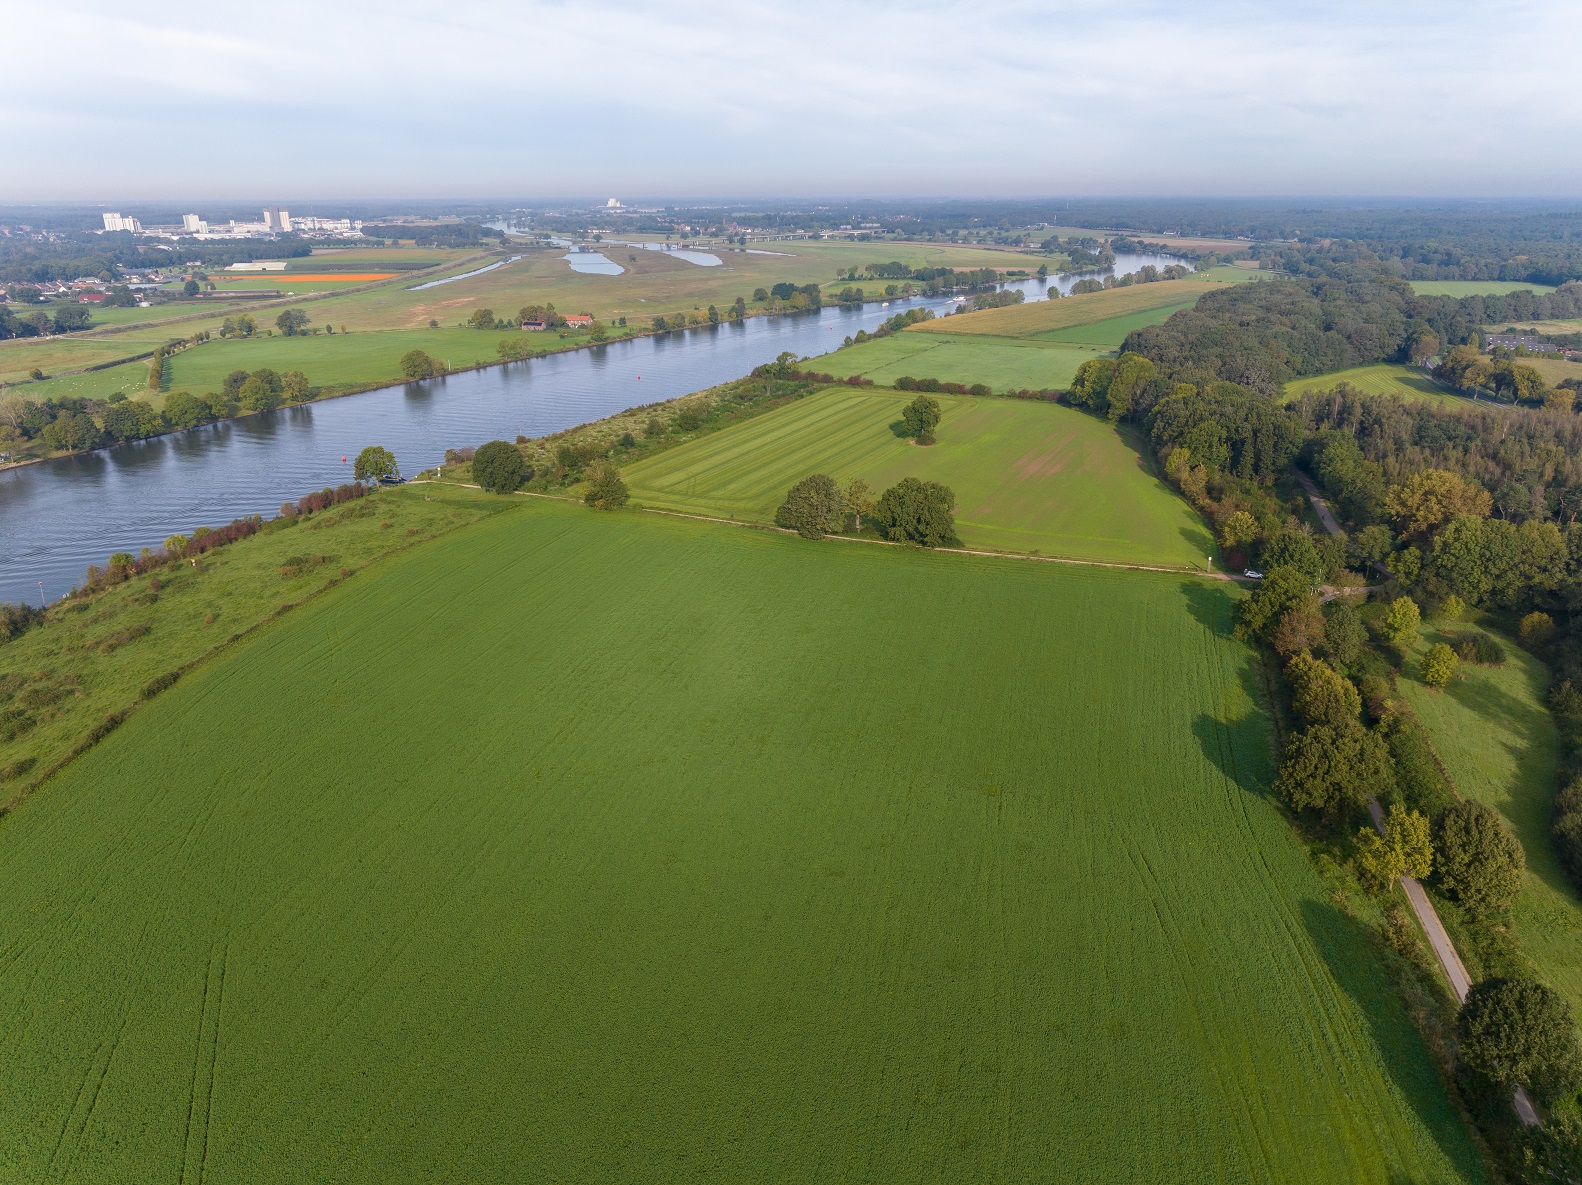 Luchtfoto van een groot groen grasland grenzend rechts aan de Maas.